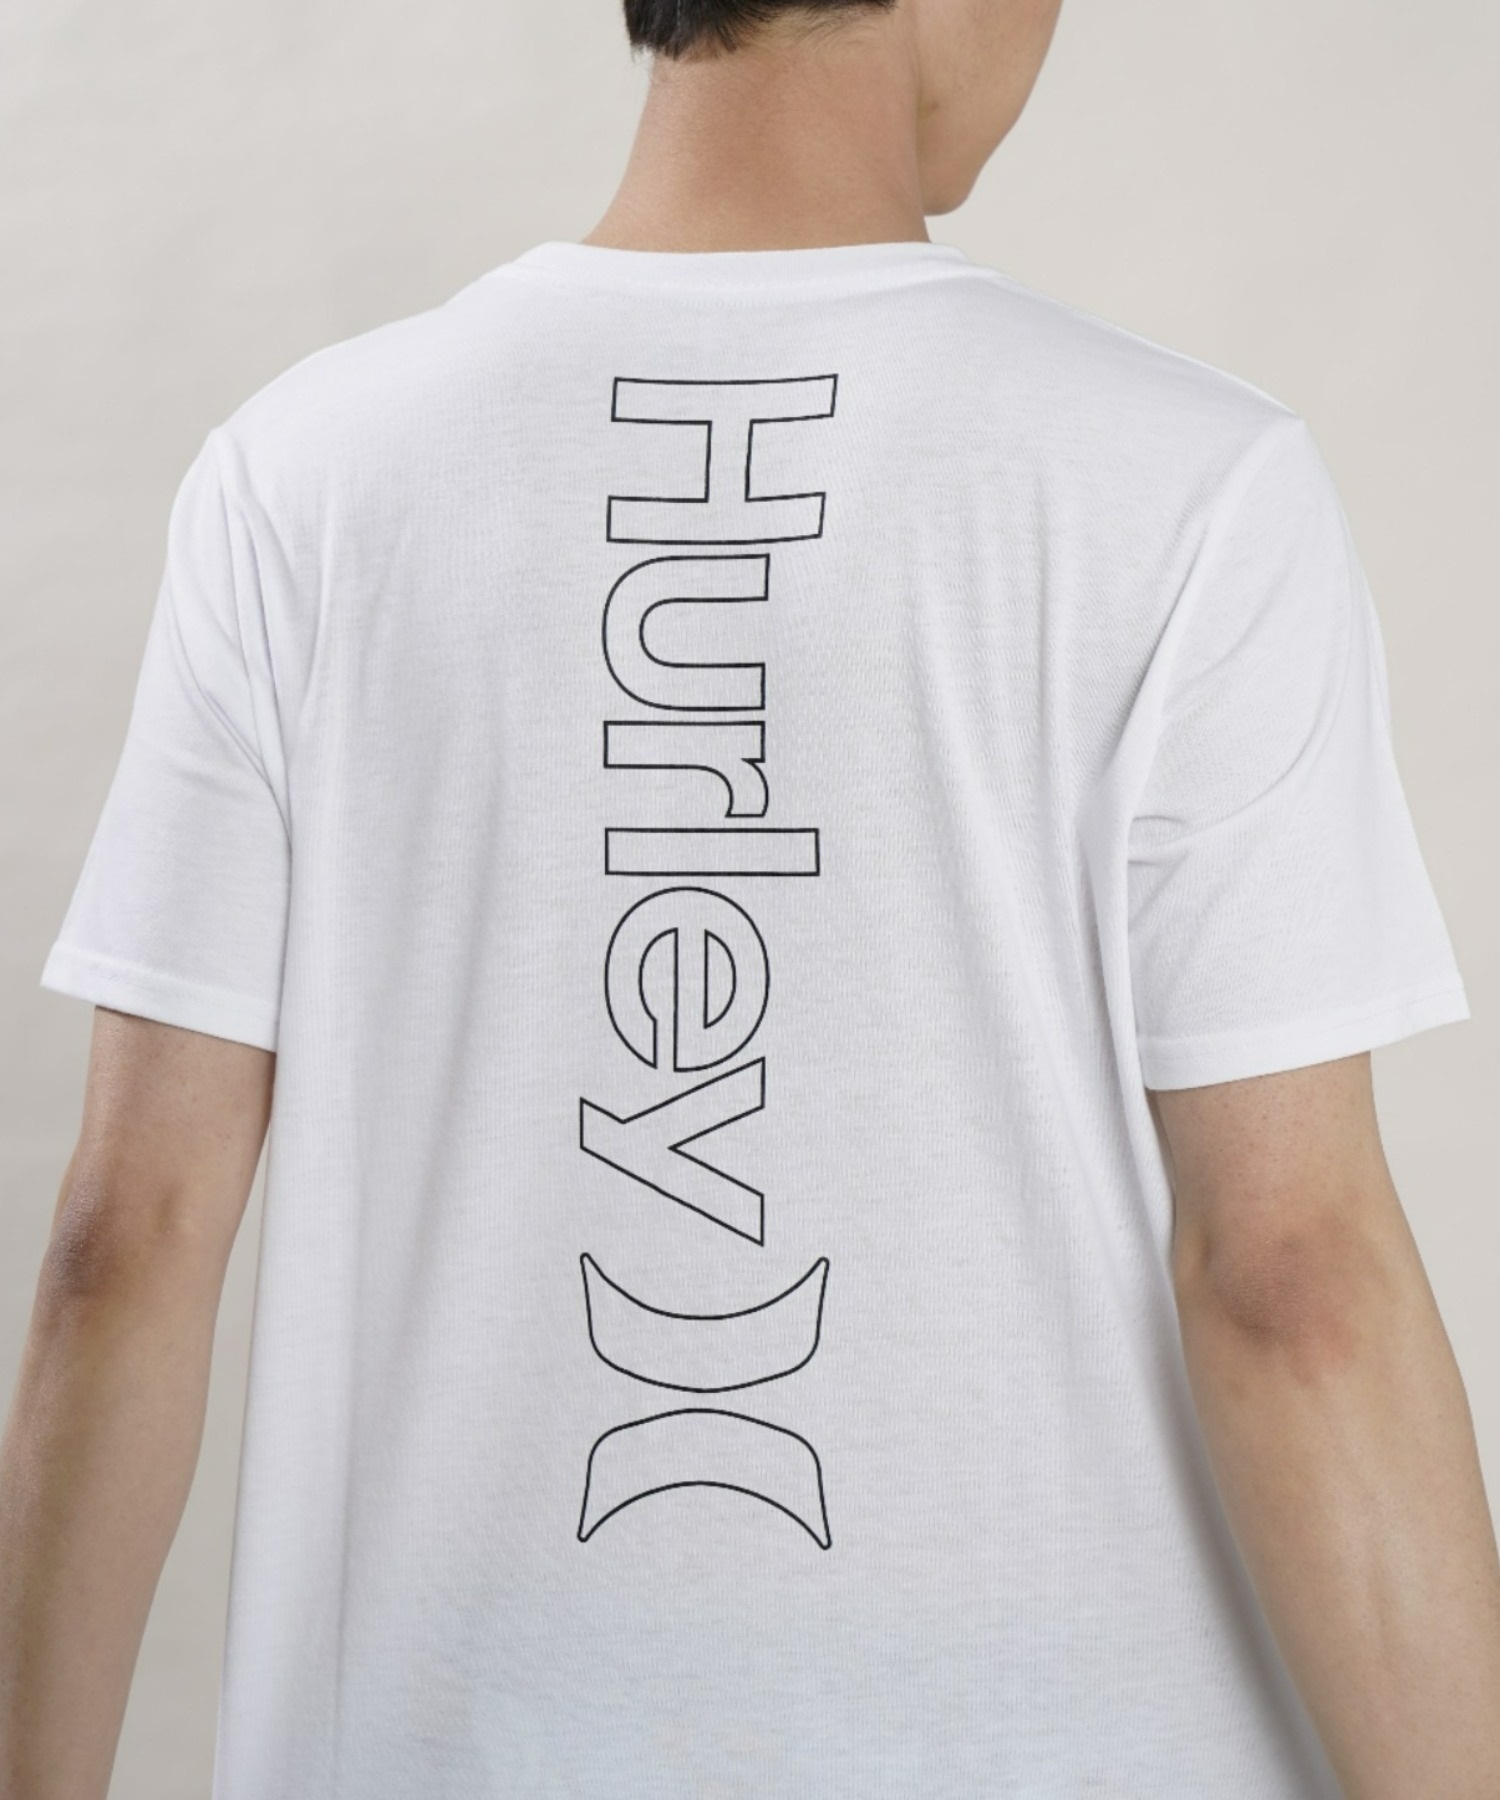 【マトメガイ対象】Hurley ハーレー MSS2200054 メンズ 半袖 Tシャツ ルーズシルエット バックプリントTシャツ ムラサキスポーツ限定(WHT-M)